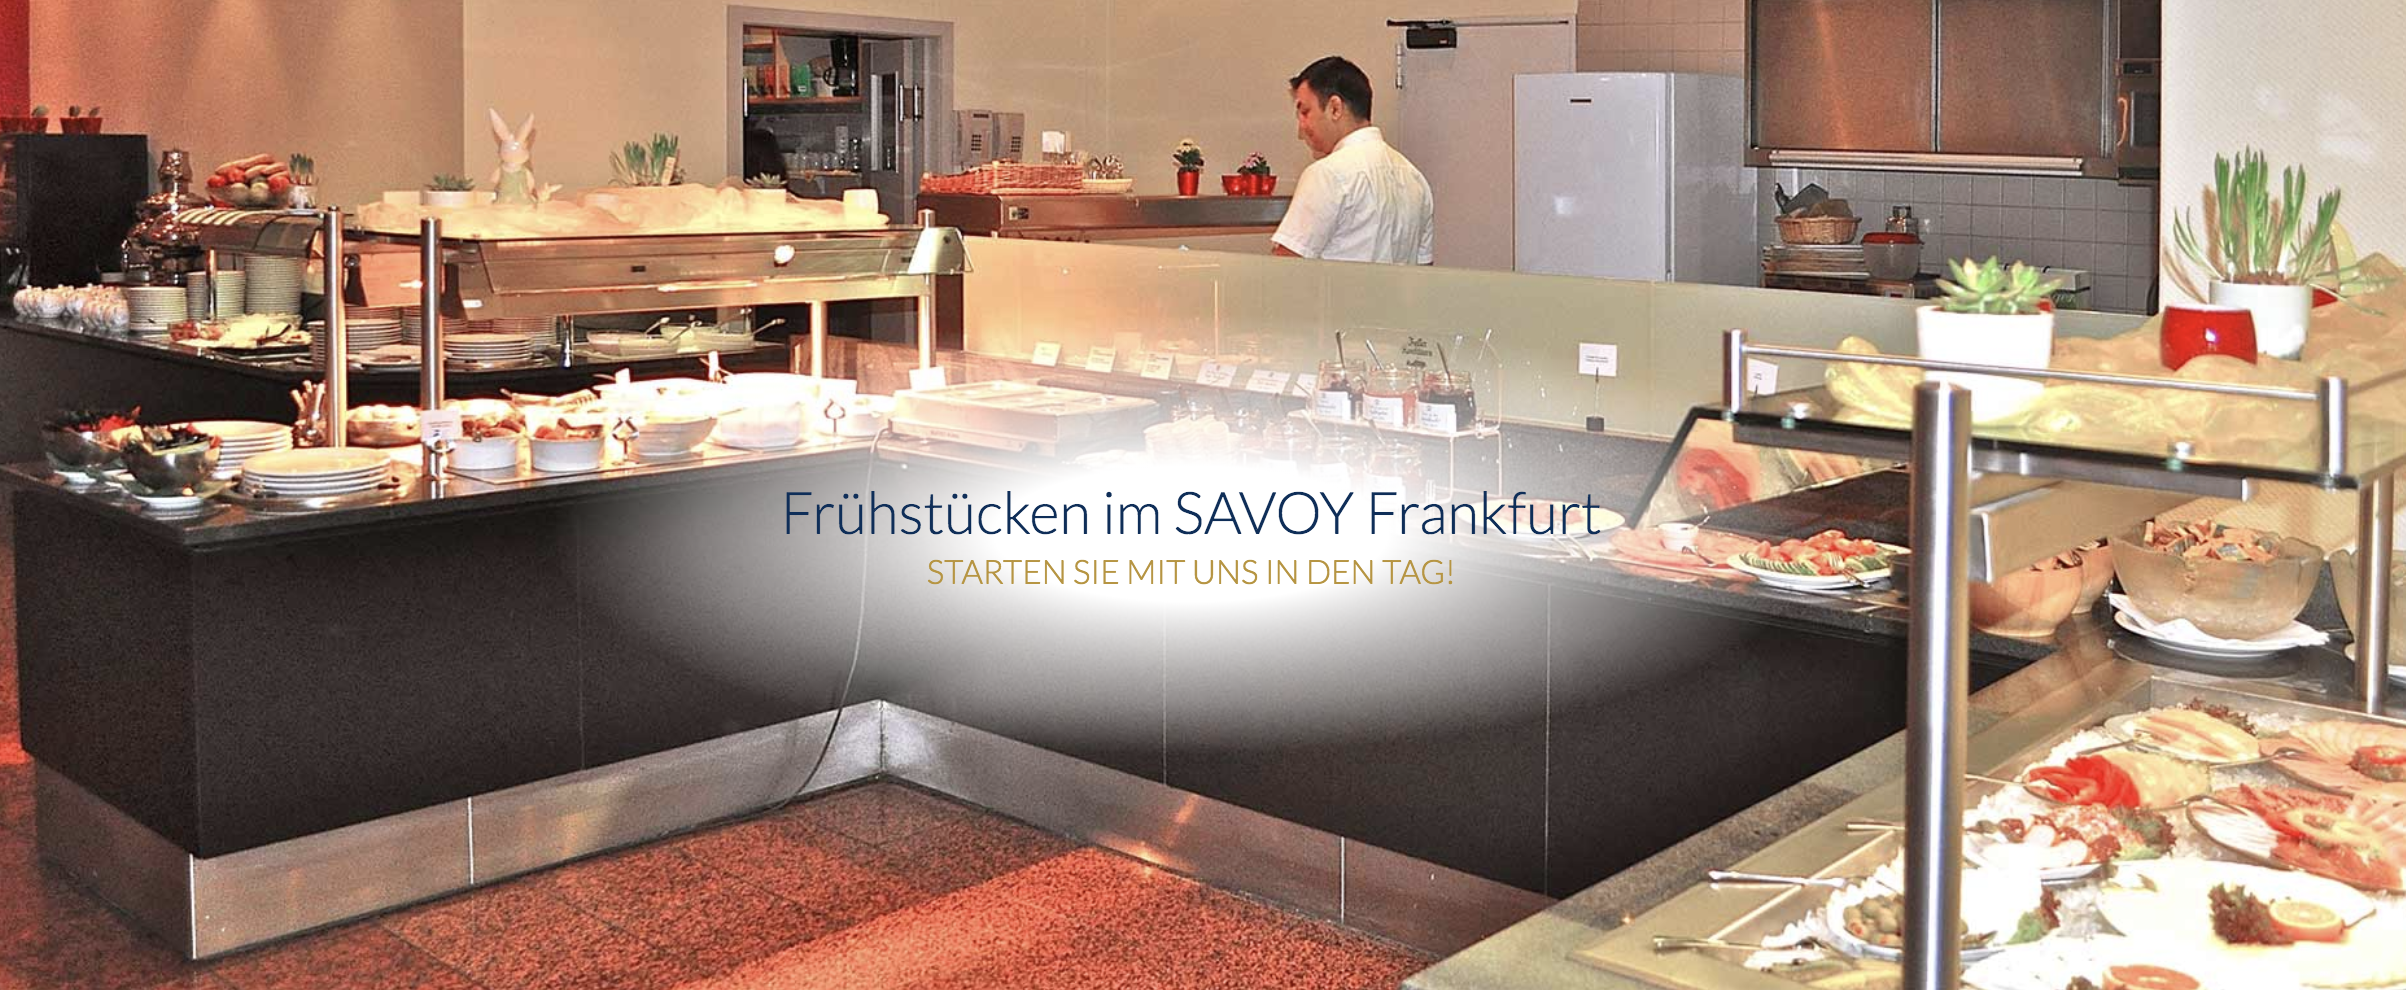 SAVOY Hotel Frankfurt